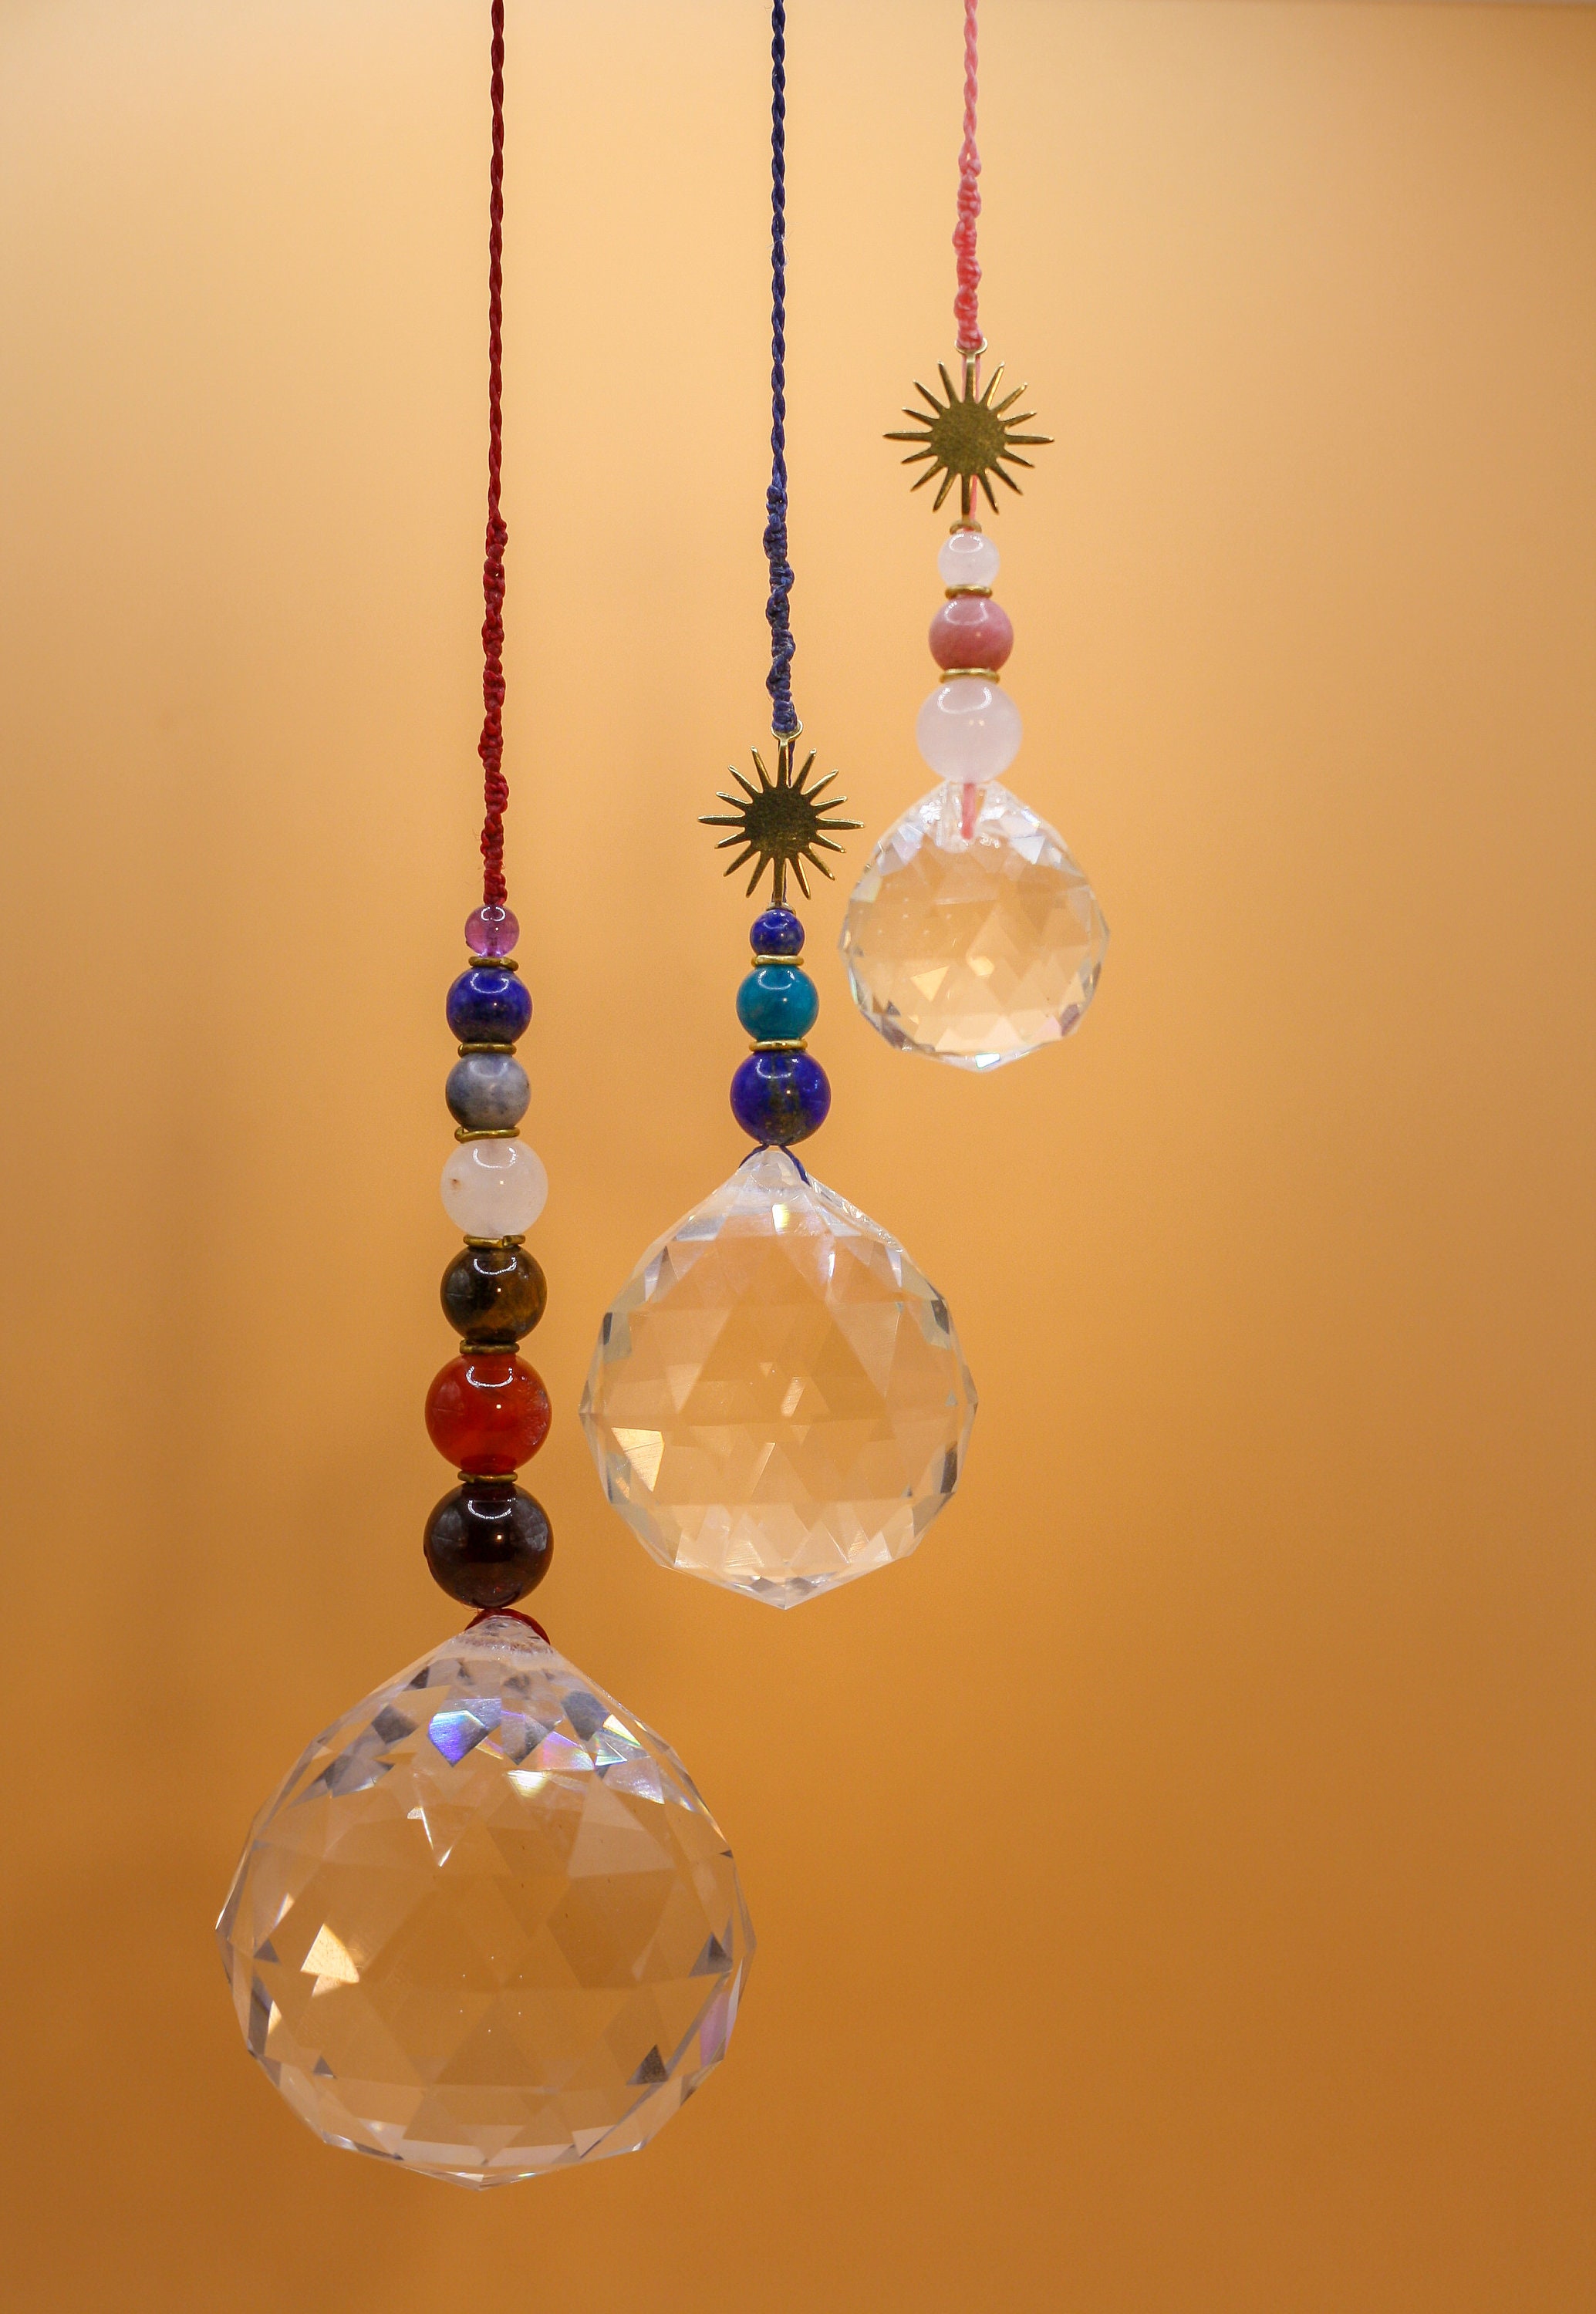 Attrape-soleil chakra Arbre de vie Grande boule de cristaux Prismes à  suspendre pour fenêtre de voiture, décoration de jardin (Chakra-Long) :  : Jardin